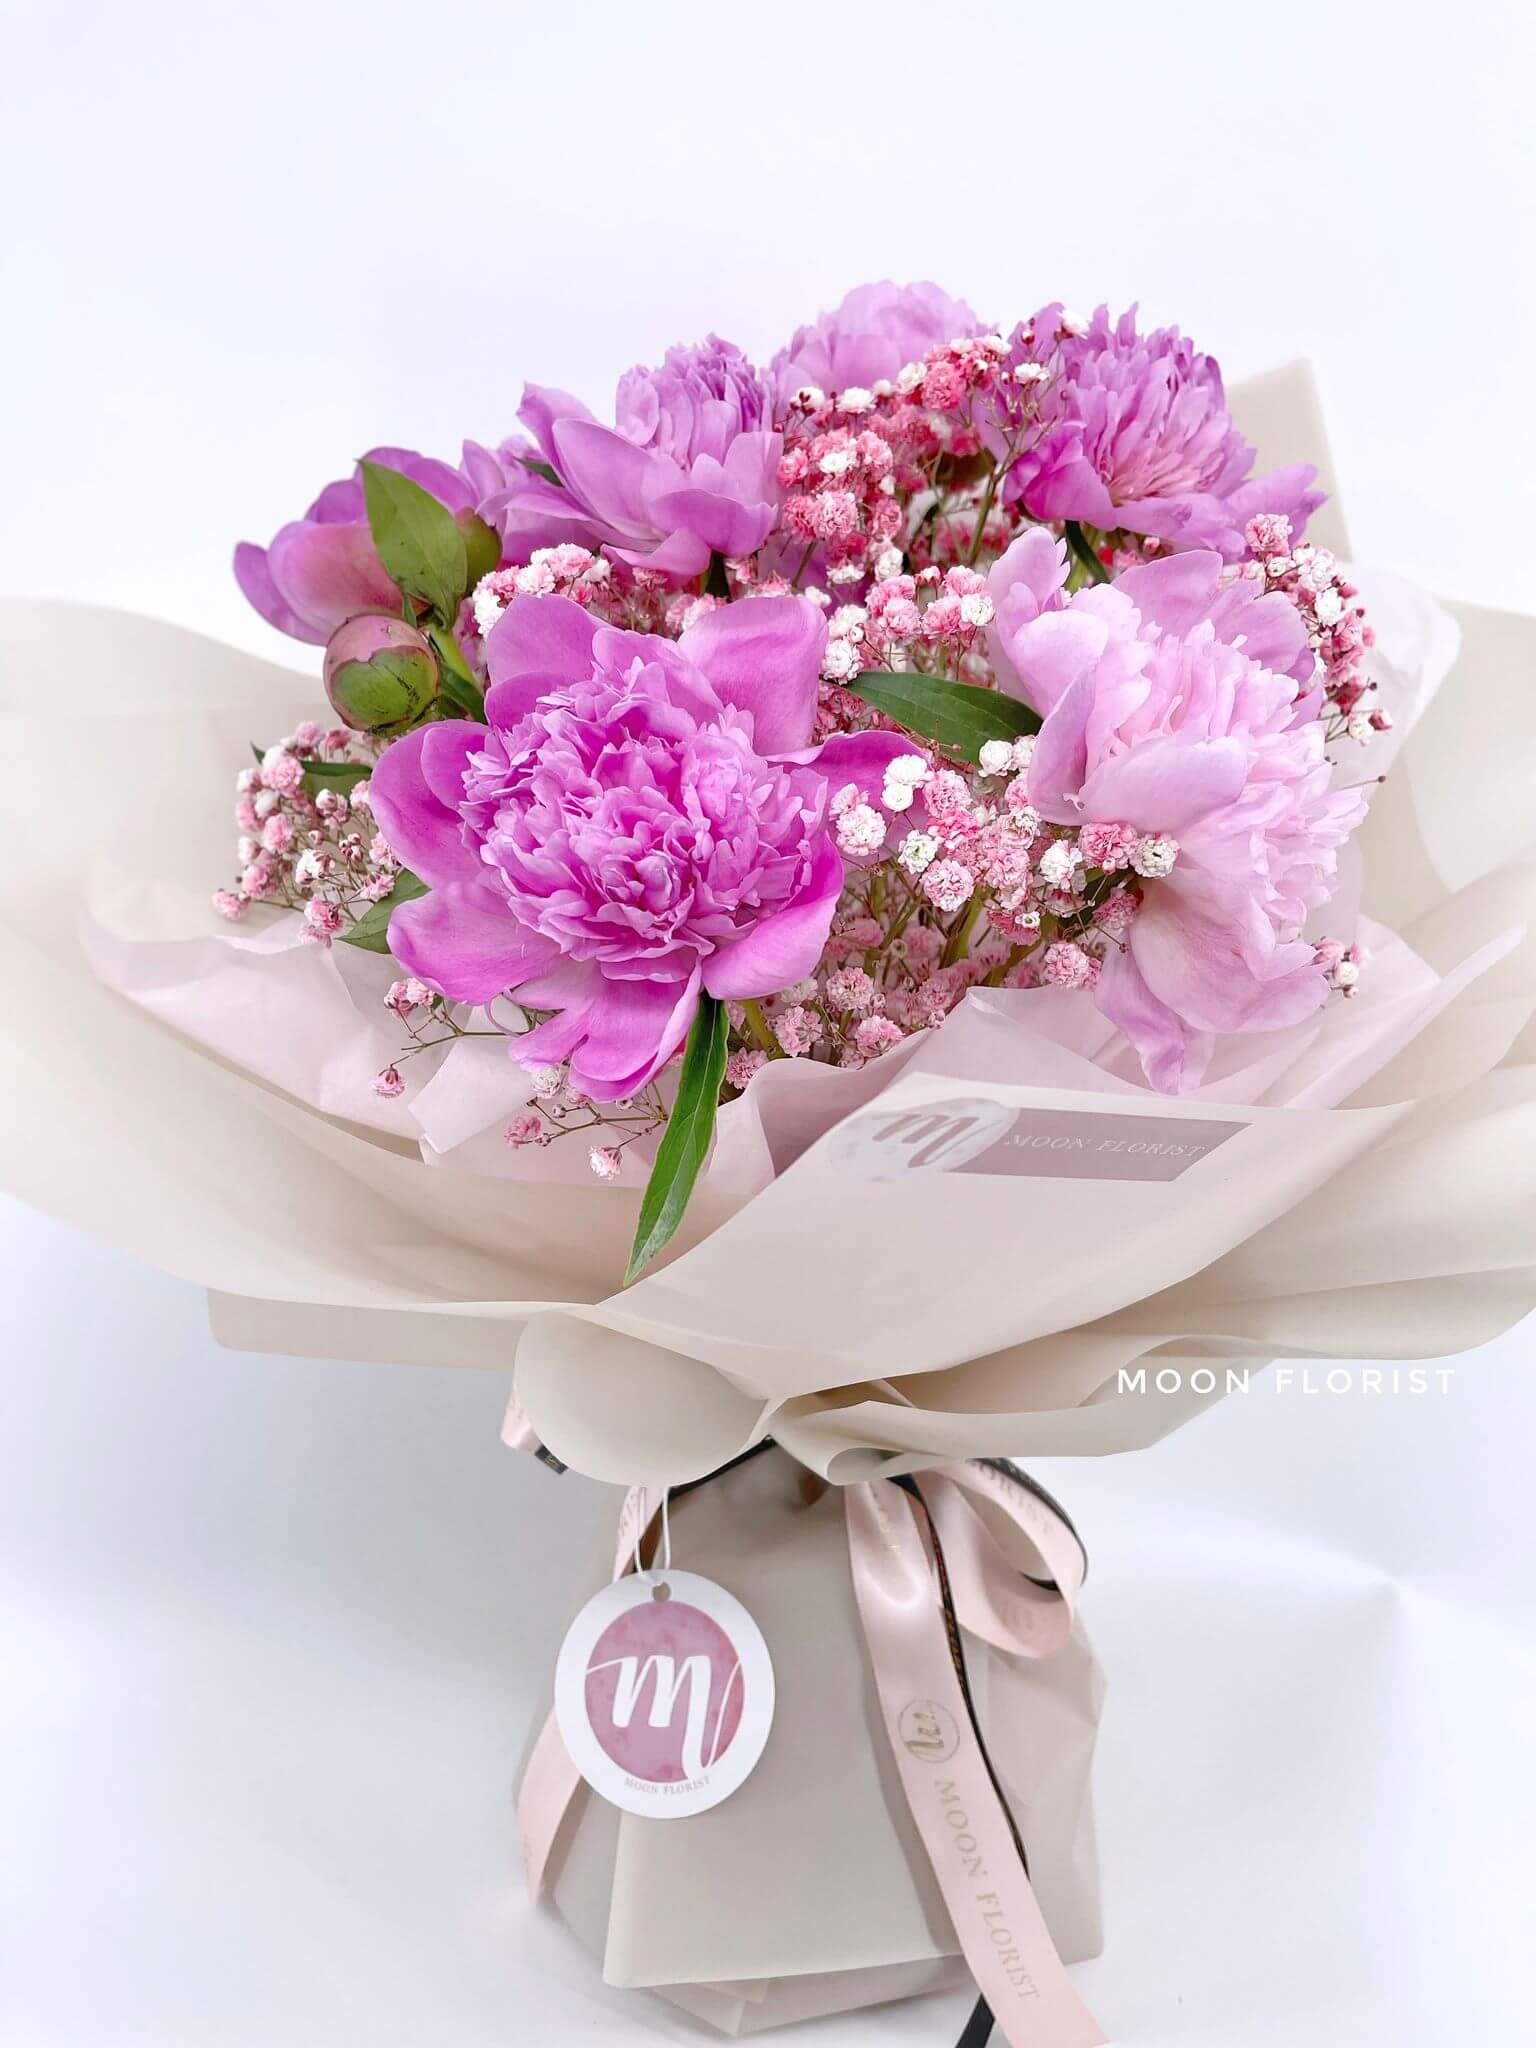 探病花, 探病花束, Moon Florist - pink flowers